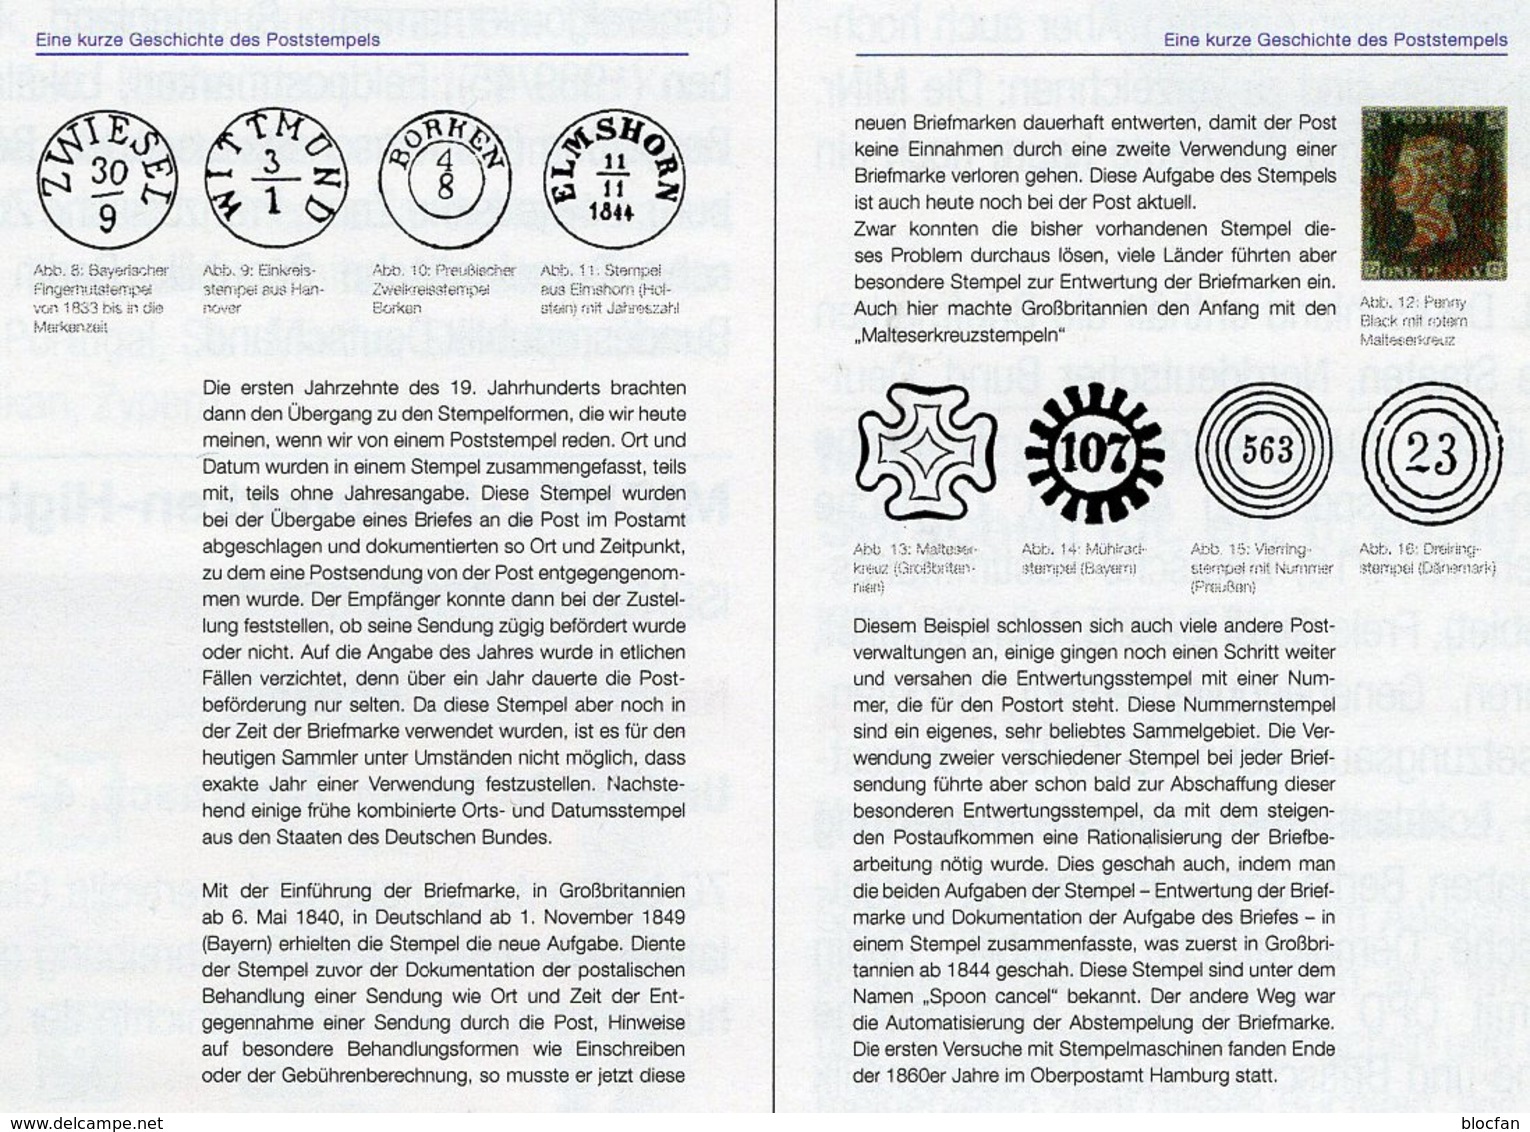 Stempel Verstehen Ratgeber 2020 New 50€ MICHEL Briefmarken Stempelarten Wert Bestimmen Stamps ISBN978 3 95402 252 6 - Filatelia